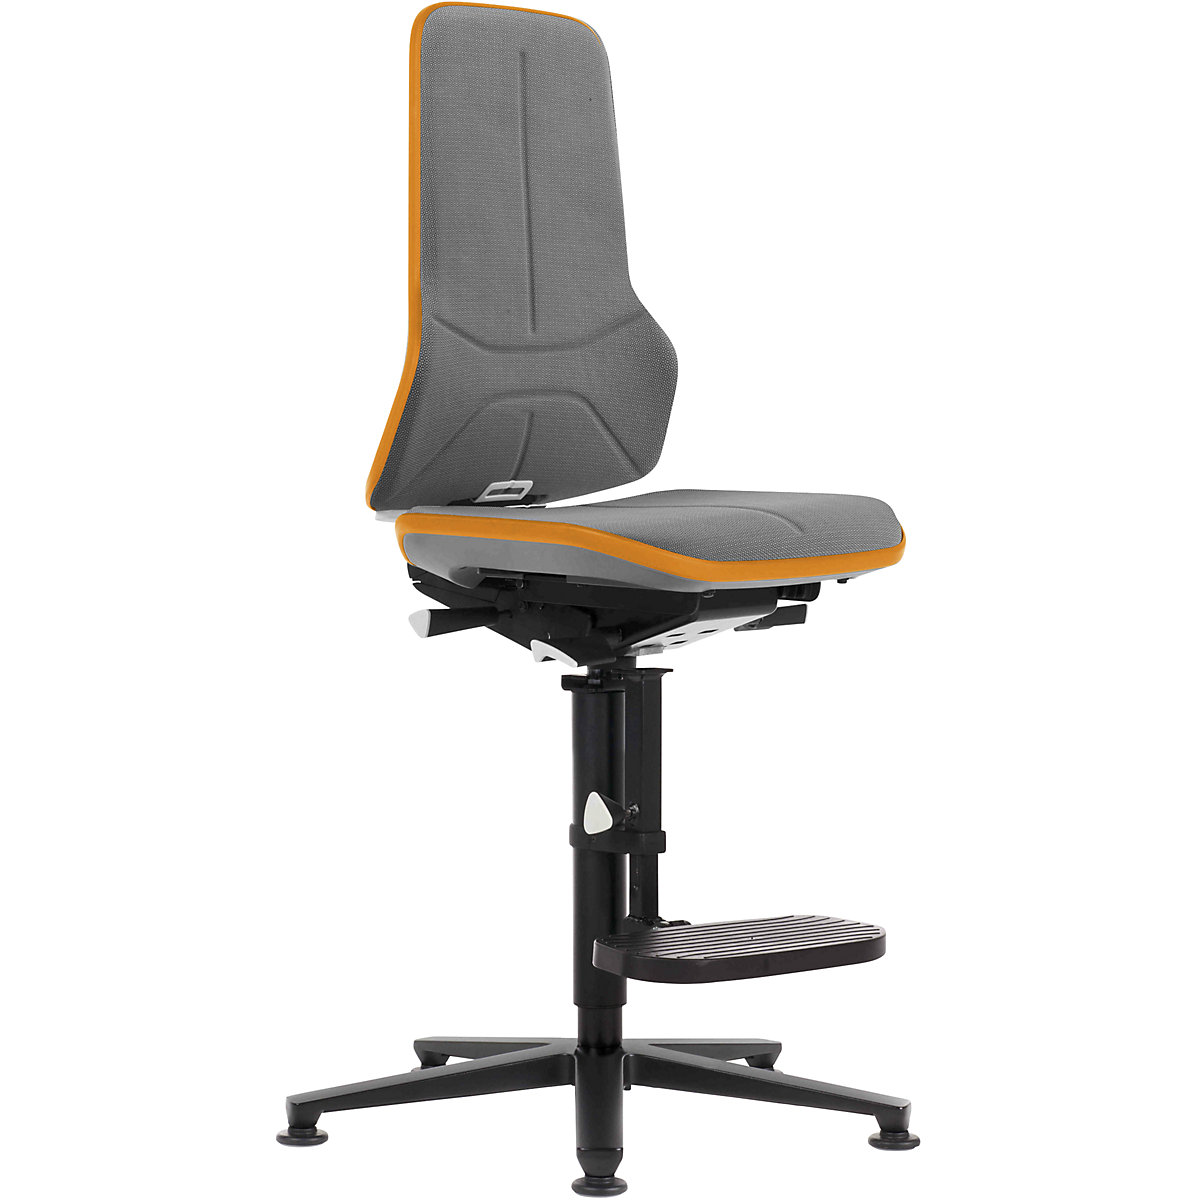 Radna okretna stolica NEON, kliznik, podrška za penjanje – bimos, stalni kontakt, Supertec materijal, fleksibilna traka u narančastoj boji-7